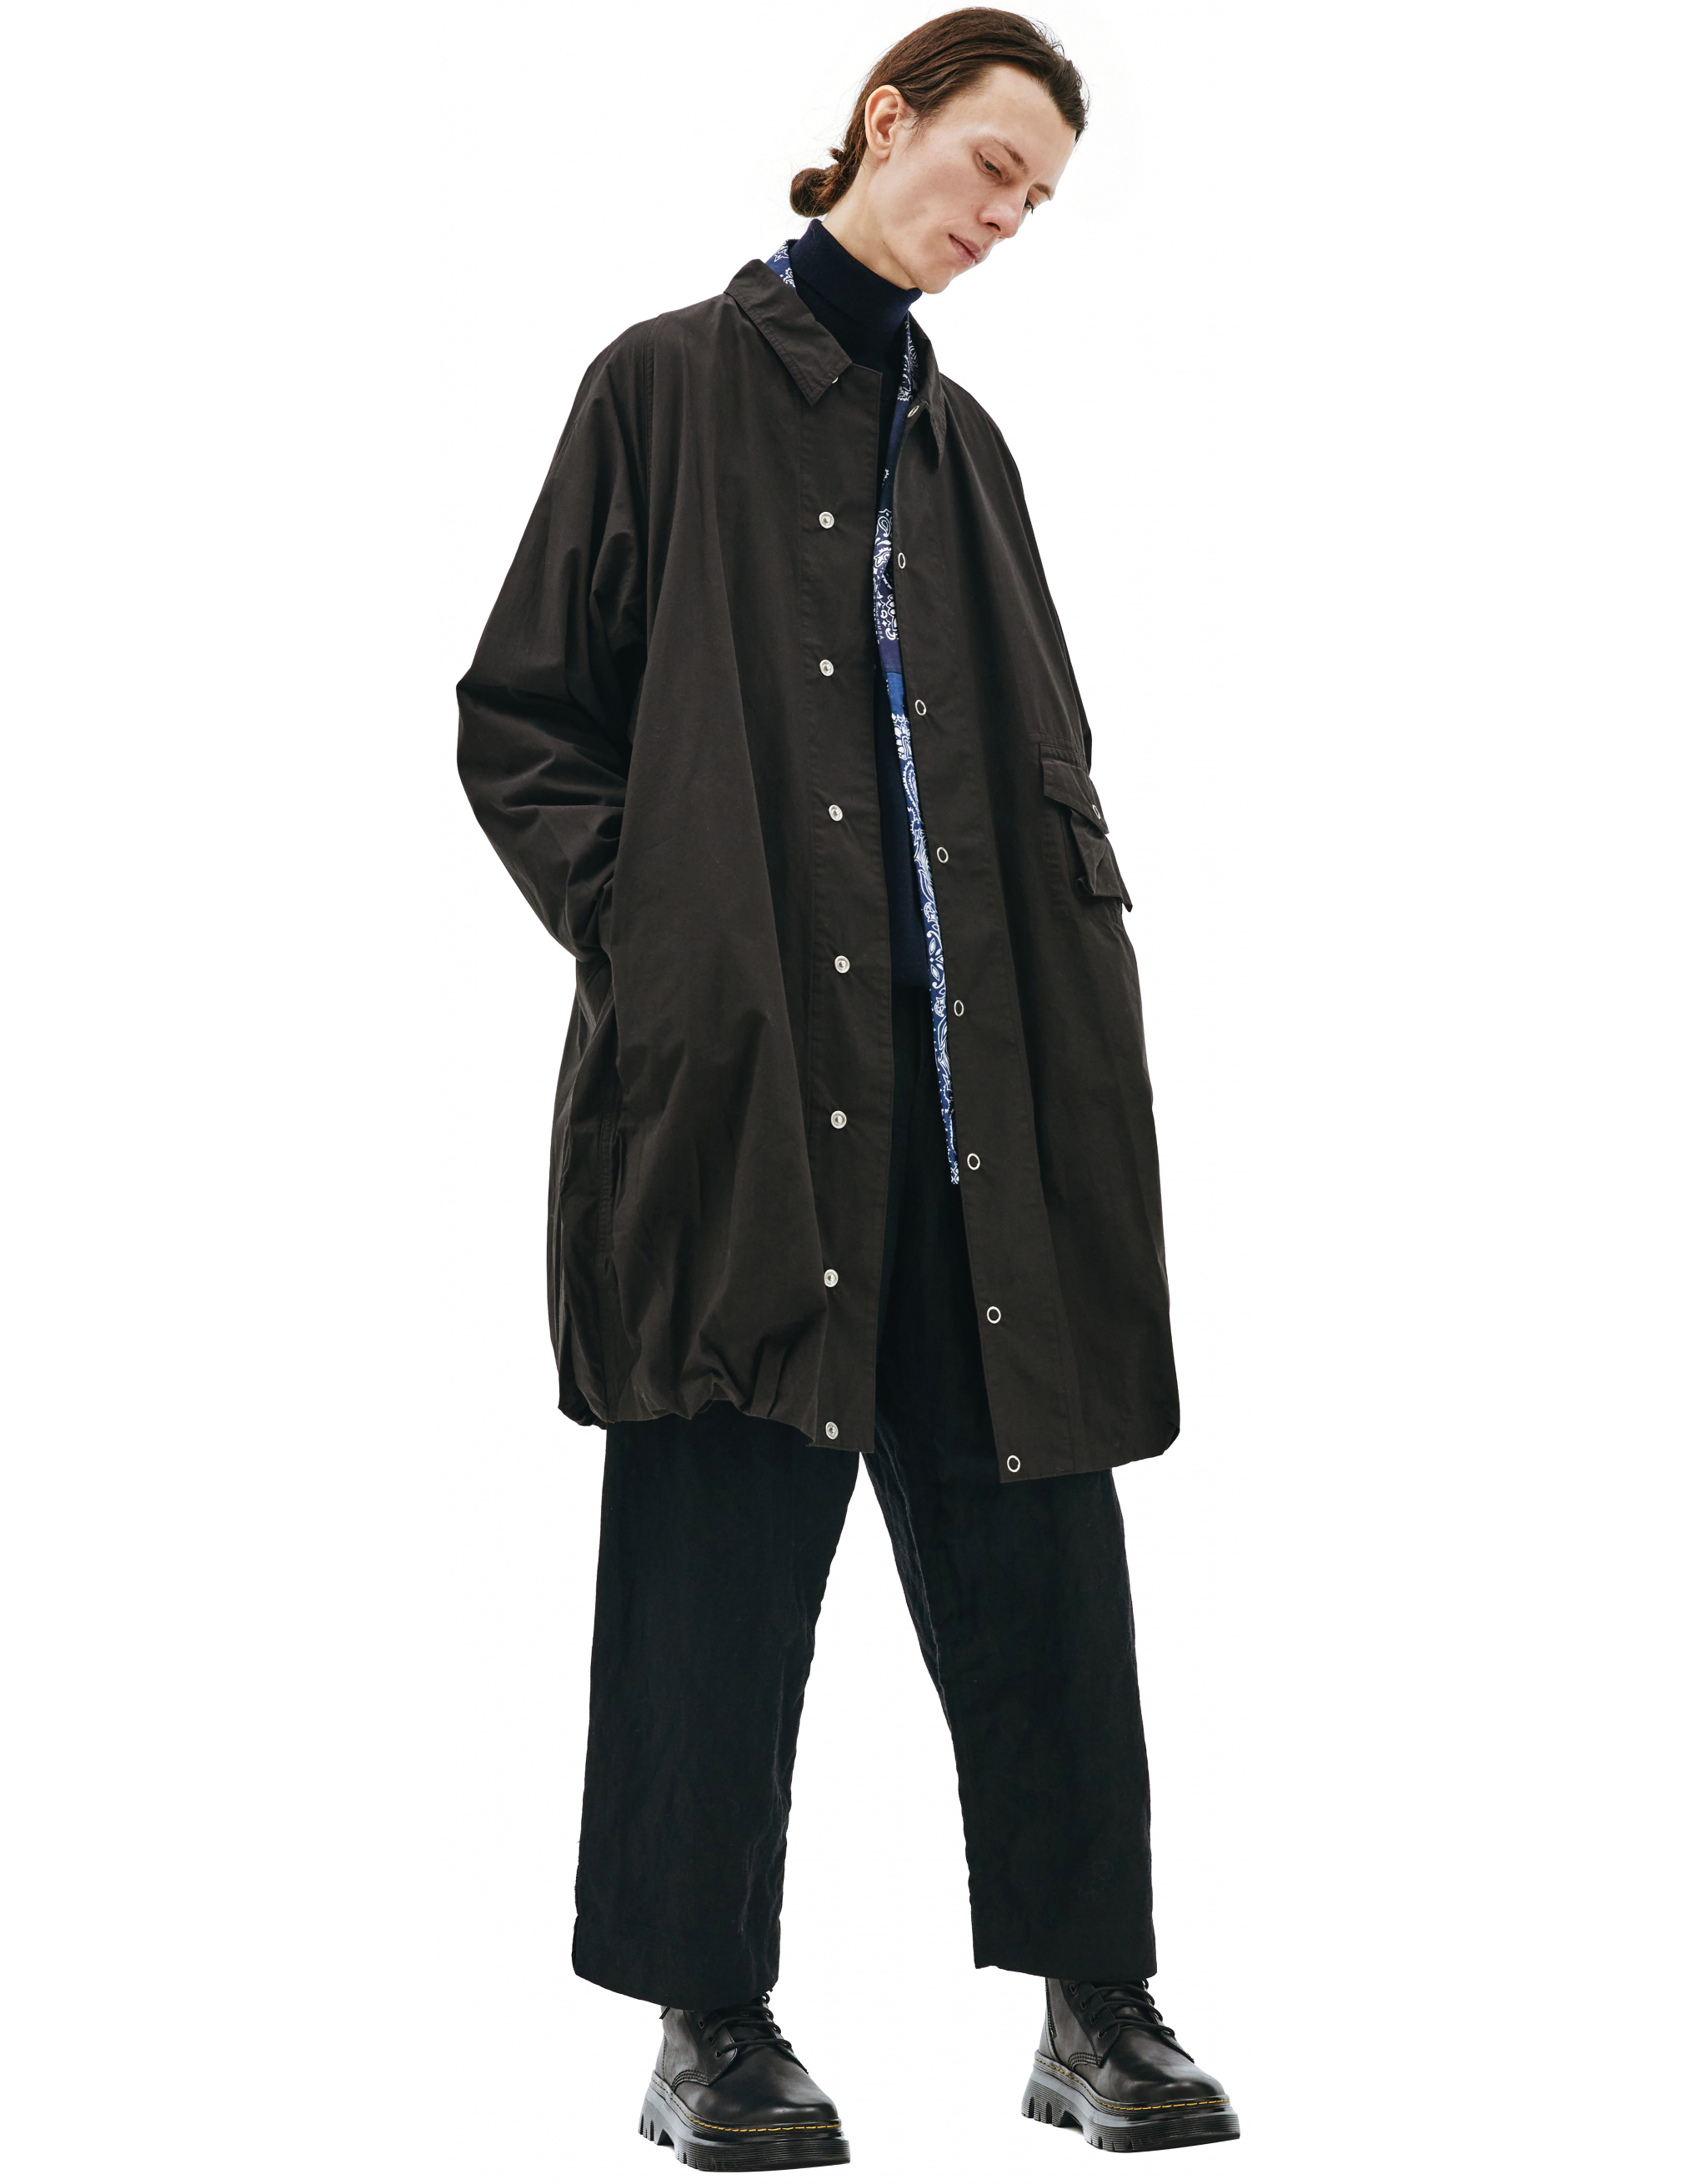 Пальто из хлопка с накладным карманом Visvim 0121205013027/blk, размер 5;4